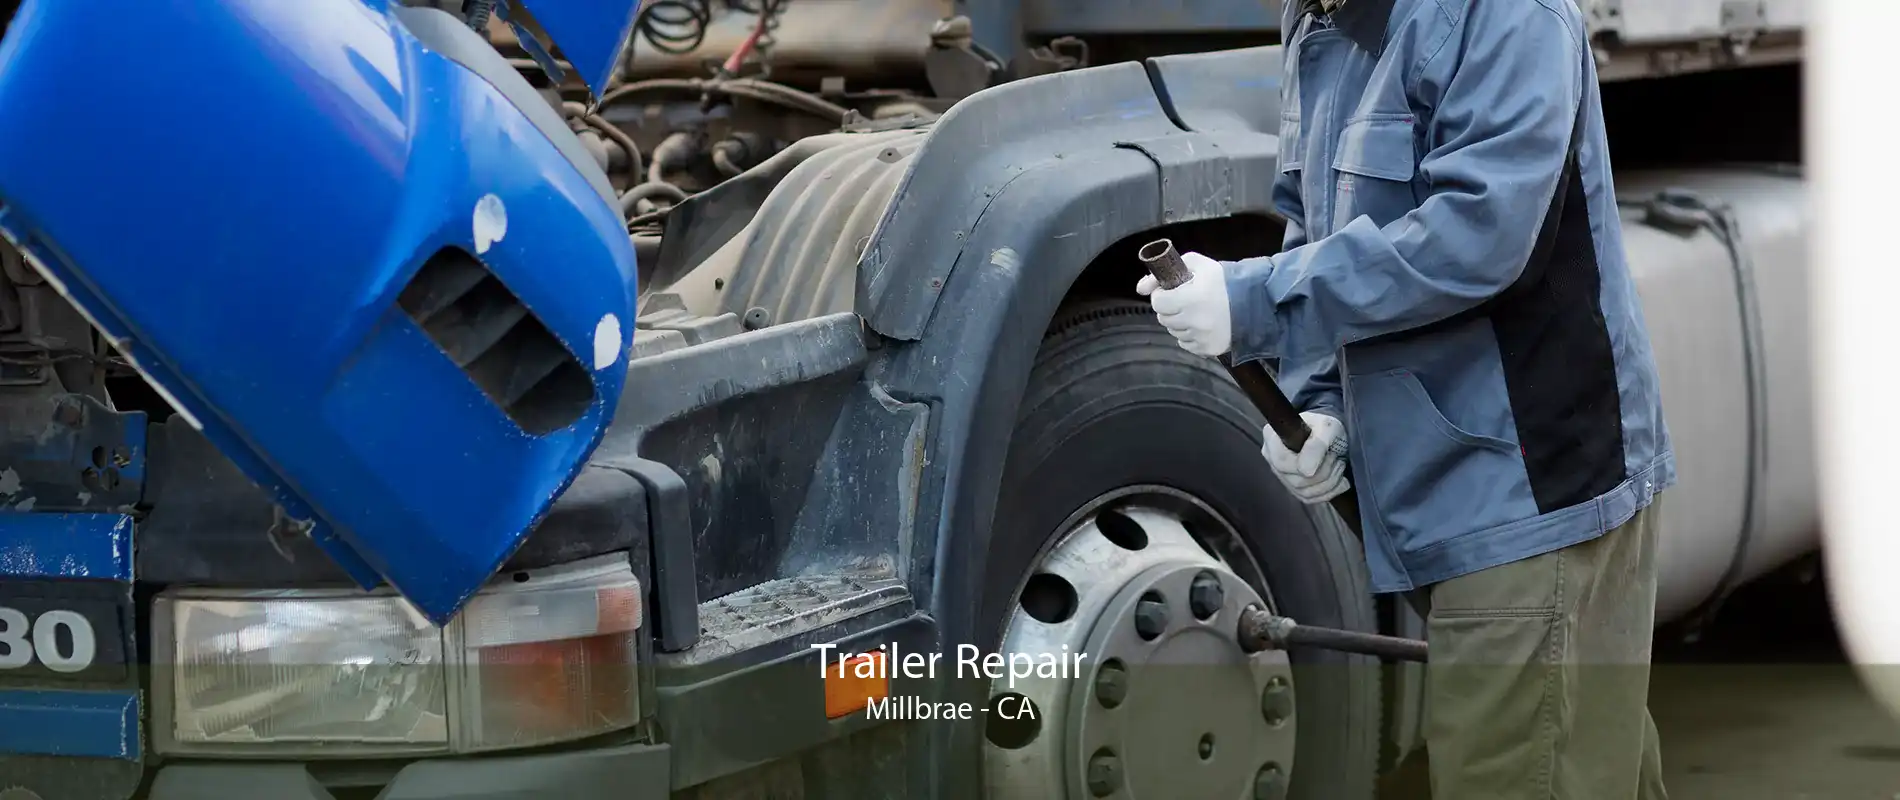 Trailer Repair Millbrae - CA